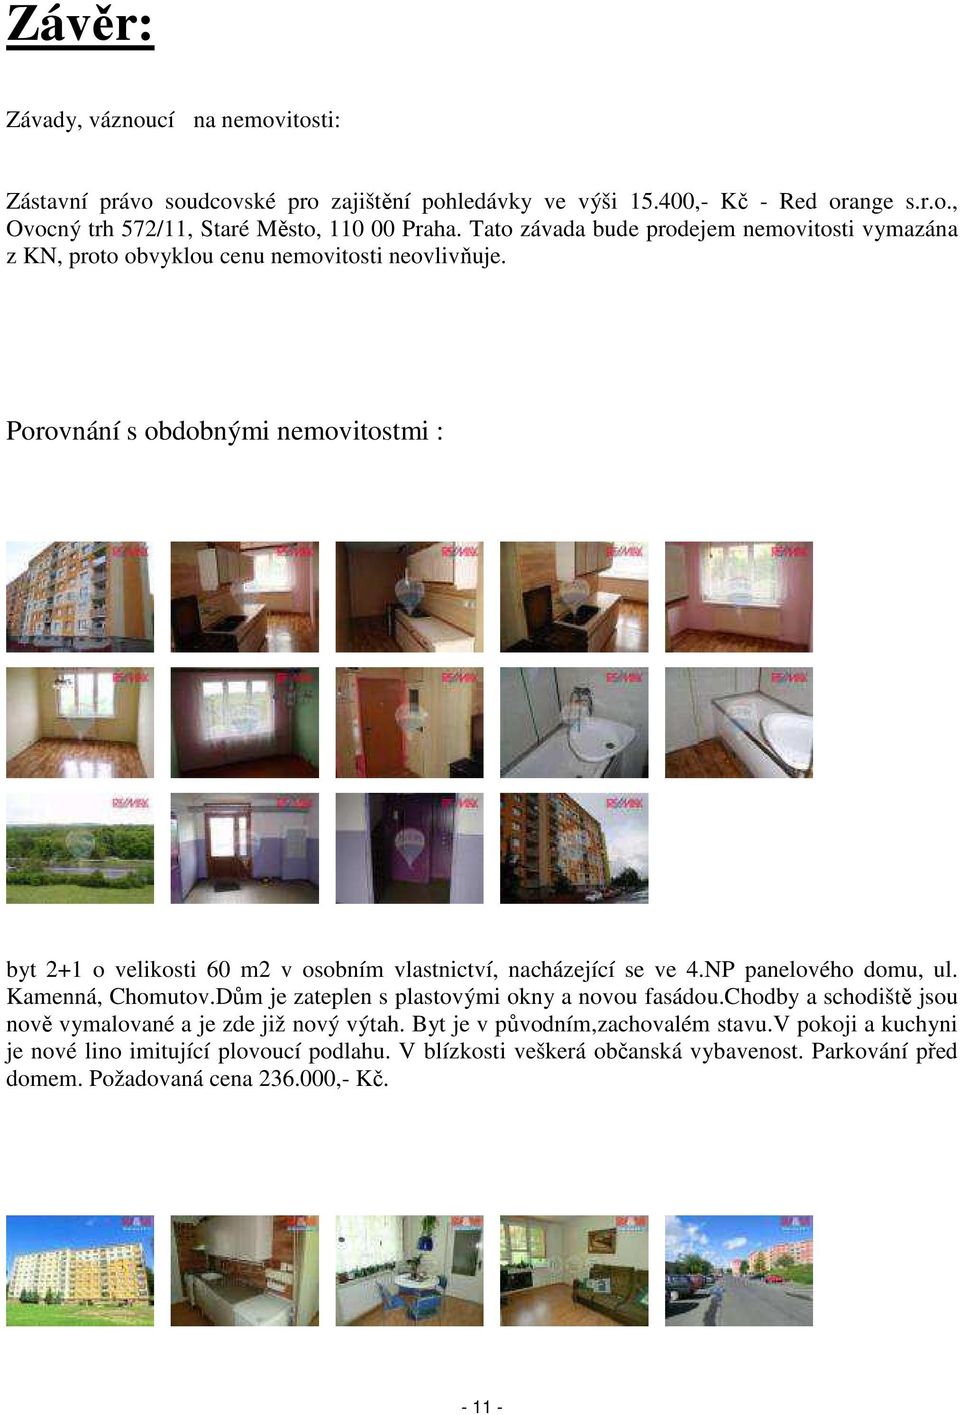 Porovnání s obdobnými nemovitostmi : byt 2+1 o velikosti 60 m2 v osobním vlastnictví, nacházející se ve 4.NP panelového domu, ul. Kamenná, Chomutov.